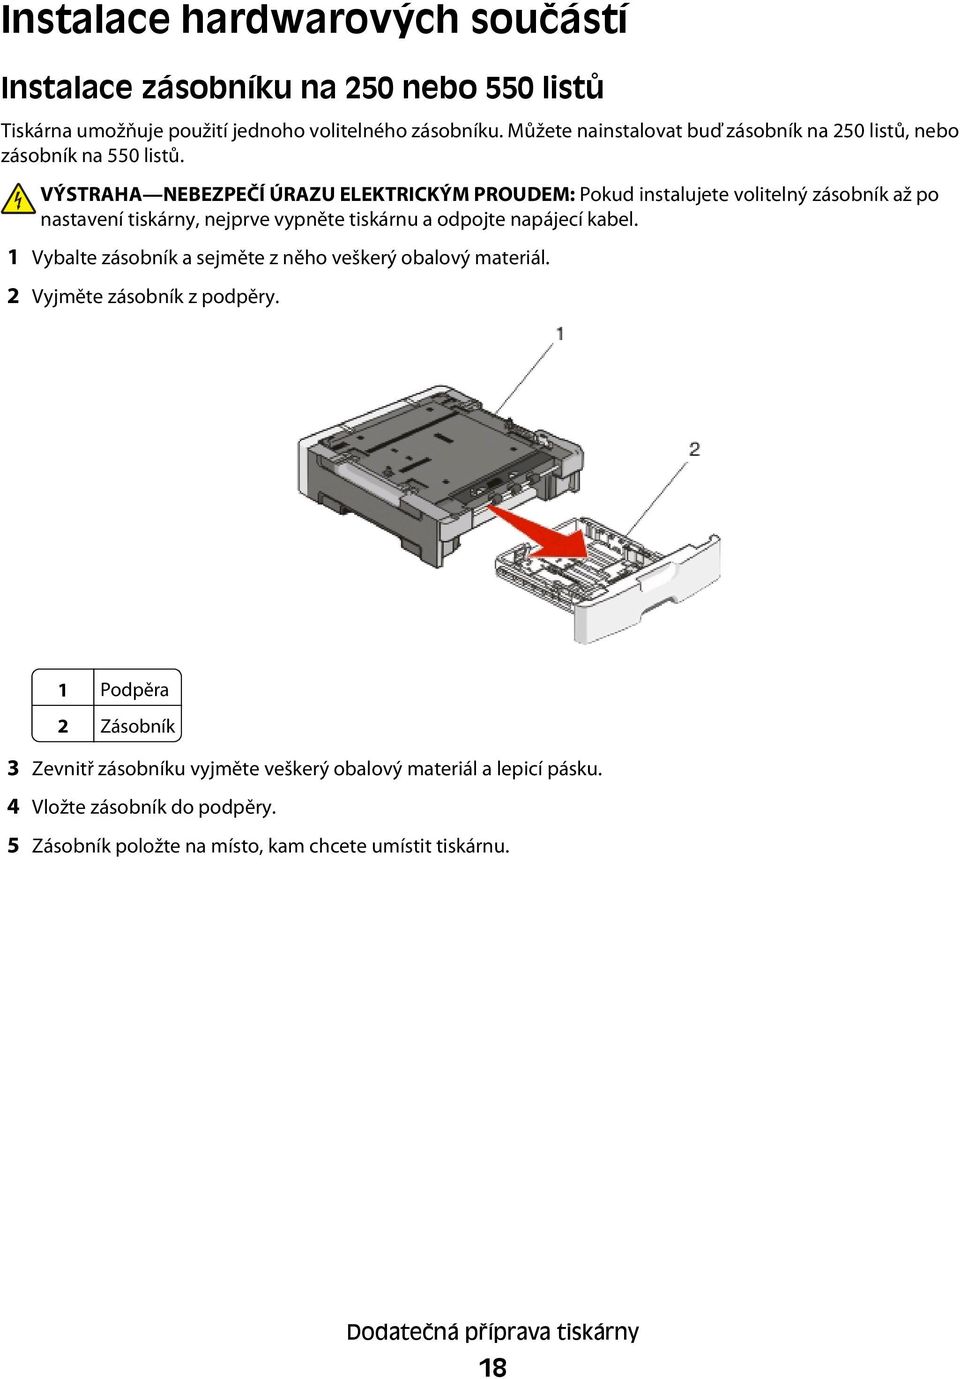 VÝSTRAHA NEBEZPEČÍ ÚRAZU ELEKTRICKÝM PROUDEM: Pokud instalujete volitelný zásobník až po nastavení tiskárny, nejprve vypněte tiskárnu a odpojte napájecí kabel.